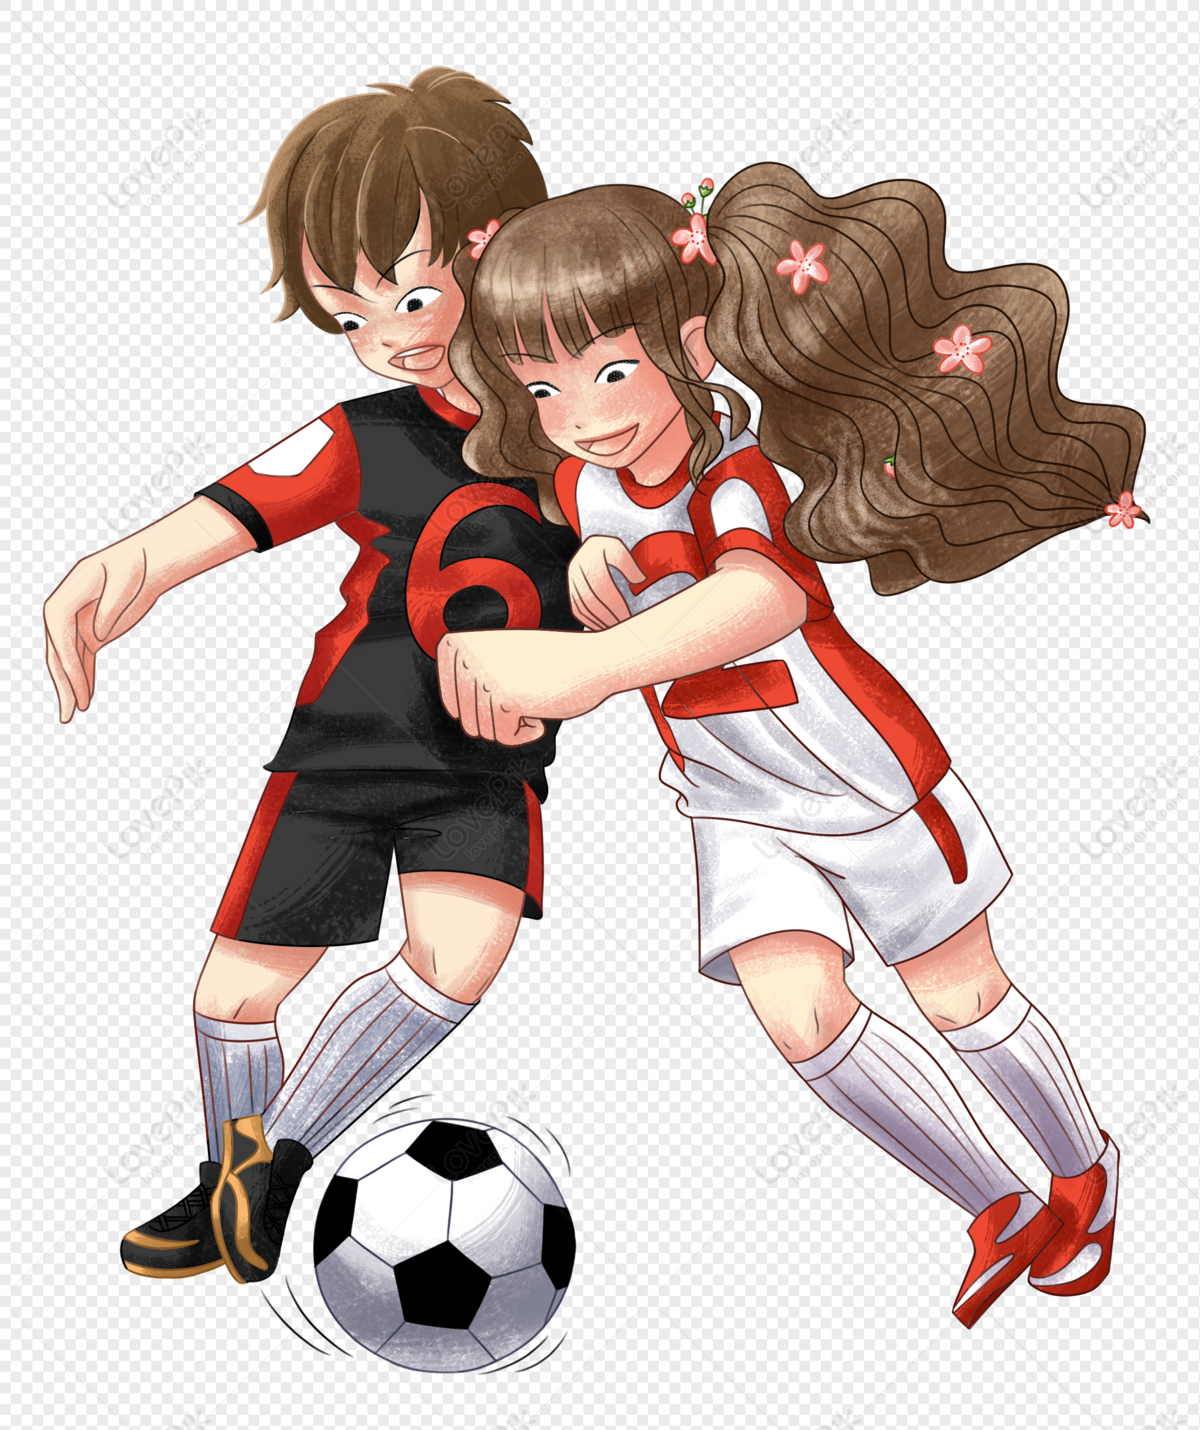 أنثى رياضية تلعب كرة القدم, فتاة كرة القدم, أنثى رياضية, رسم كاريكاتوري ...